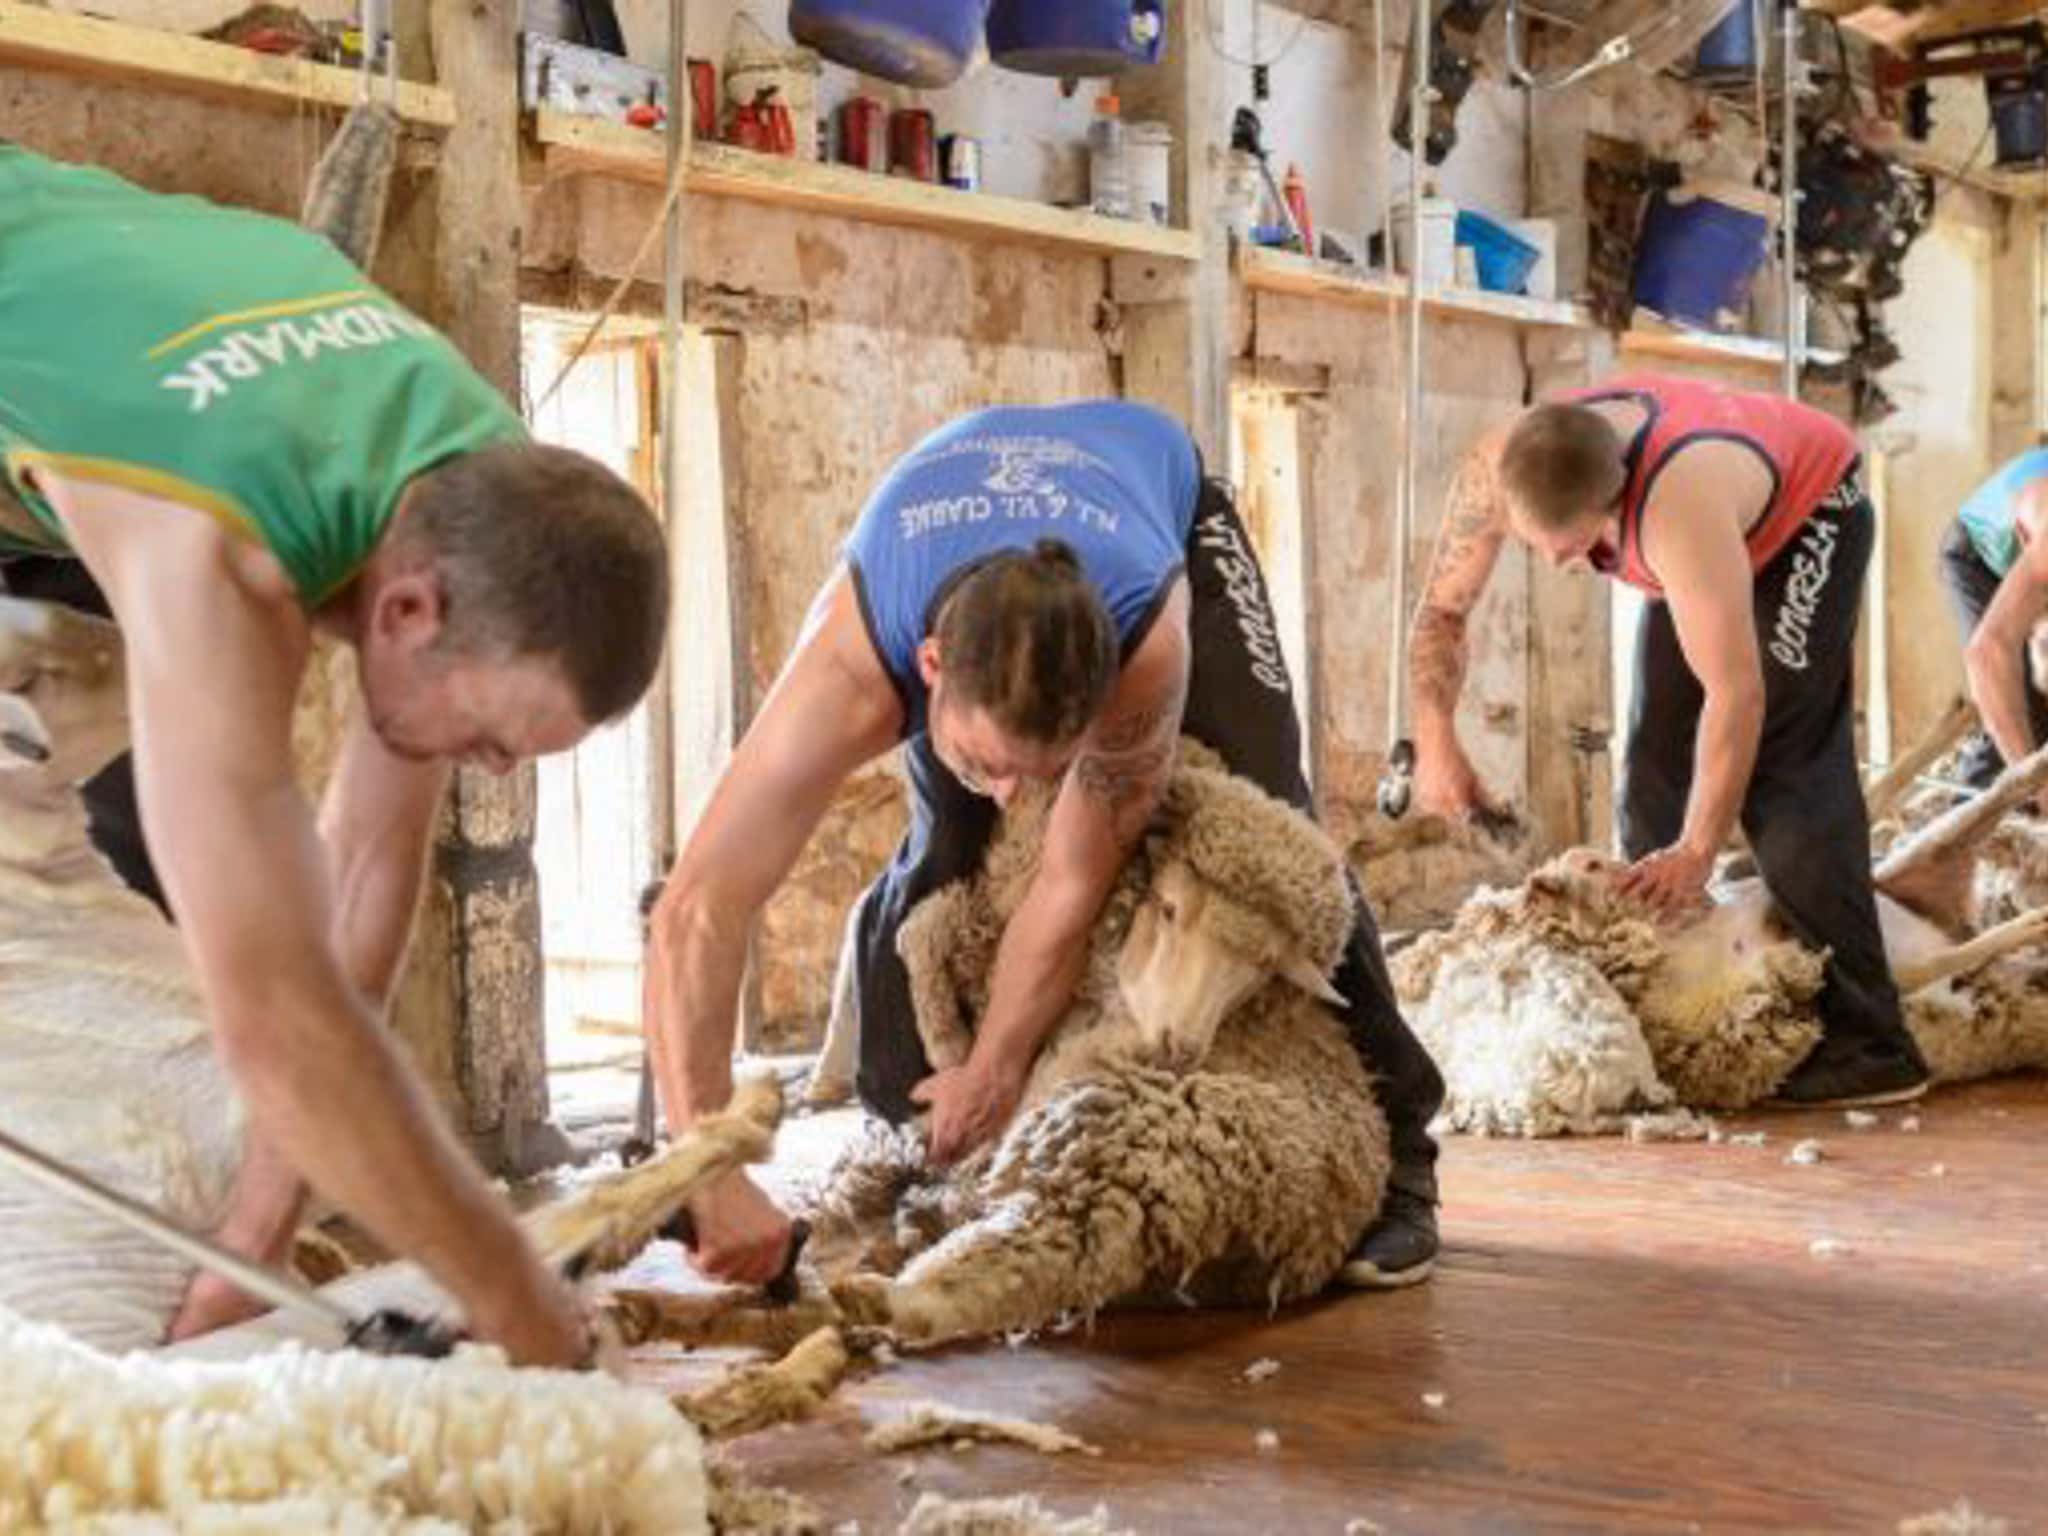 Shearing 2017 Shearing In Action2 720x380